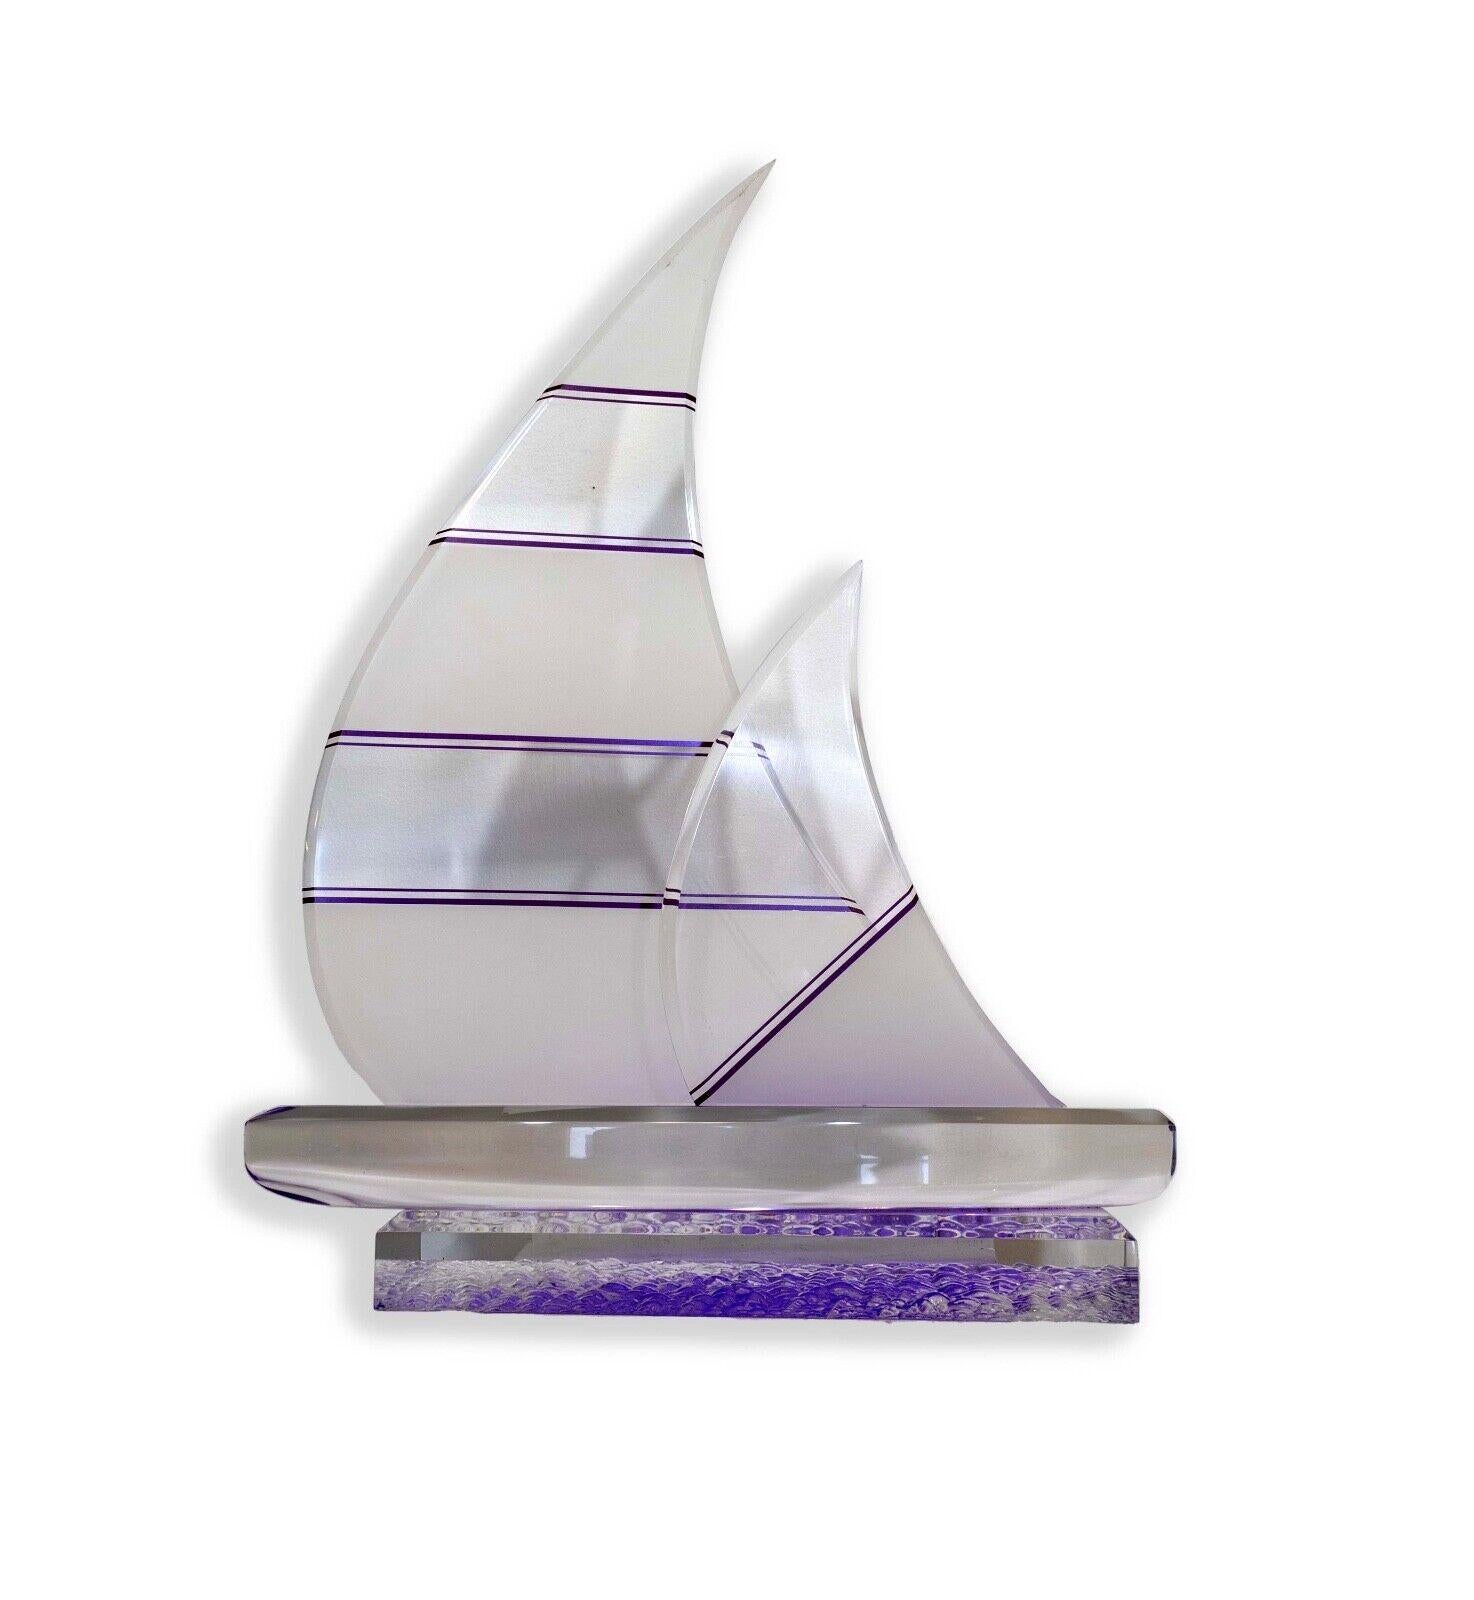 La sculpture de voilier en lucite violette et transparente de Shlomi Haziza est un exemple fascinant d'art moderne contemporain, qui associe un savoir-faire artisanal complexe à une expérience visuelle unique. Réalisée par l'artiste de renom Shlomi